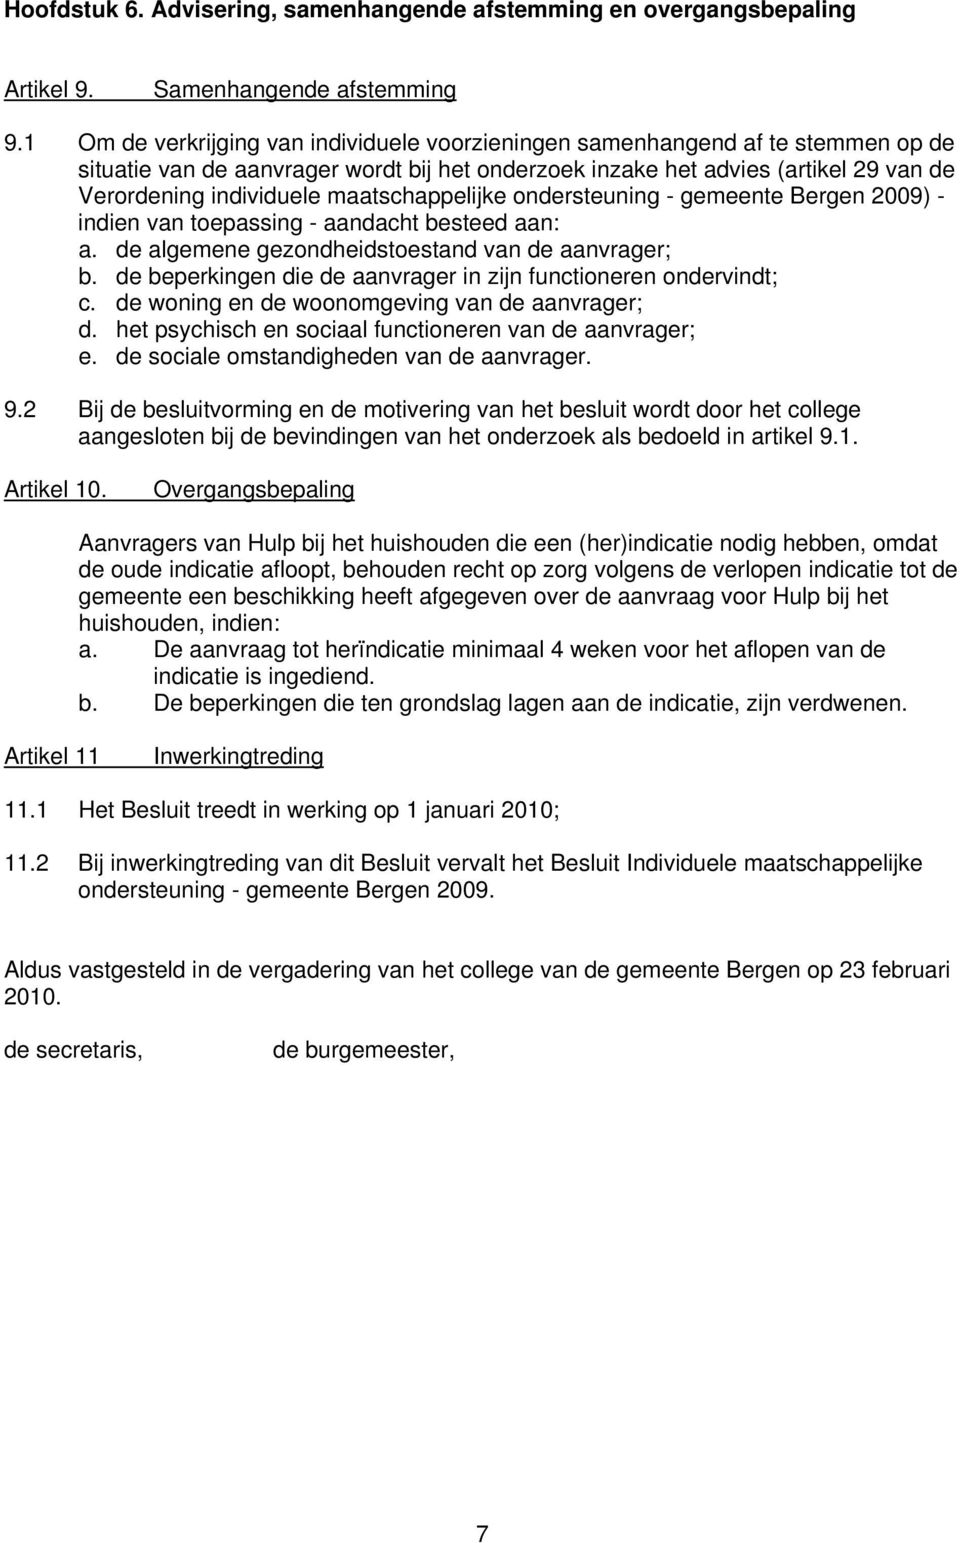 maatschappelijke ondersteuning - gemeente Bergen 2009) - indien van toepassing - aandacht besteed aan: a. de algemene gezondheidstoestand van de aanvrager; b.